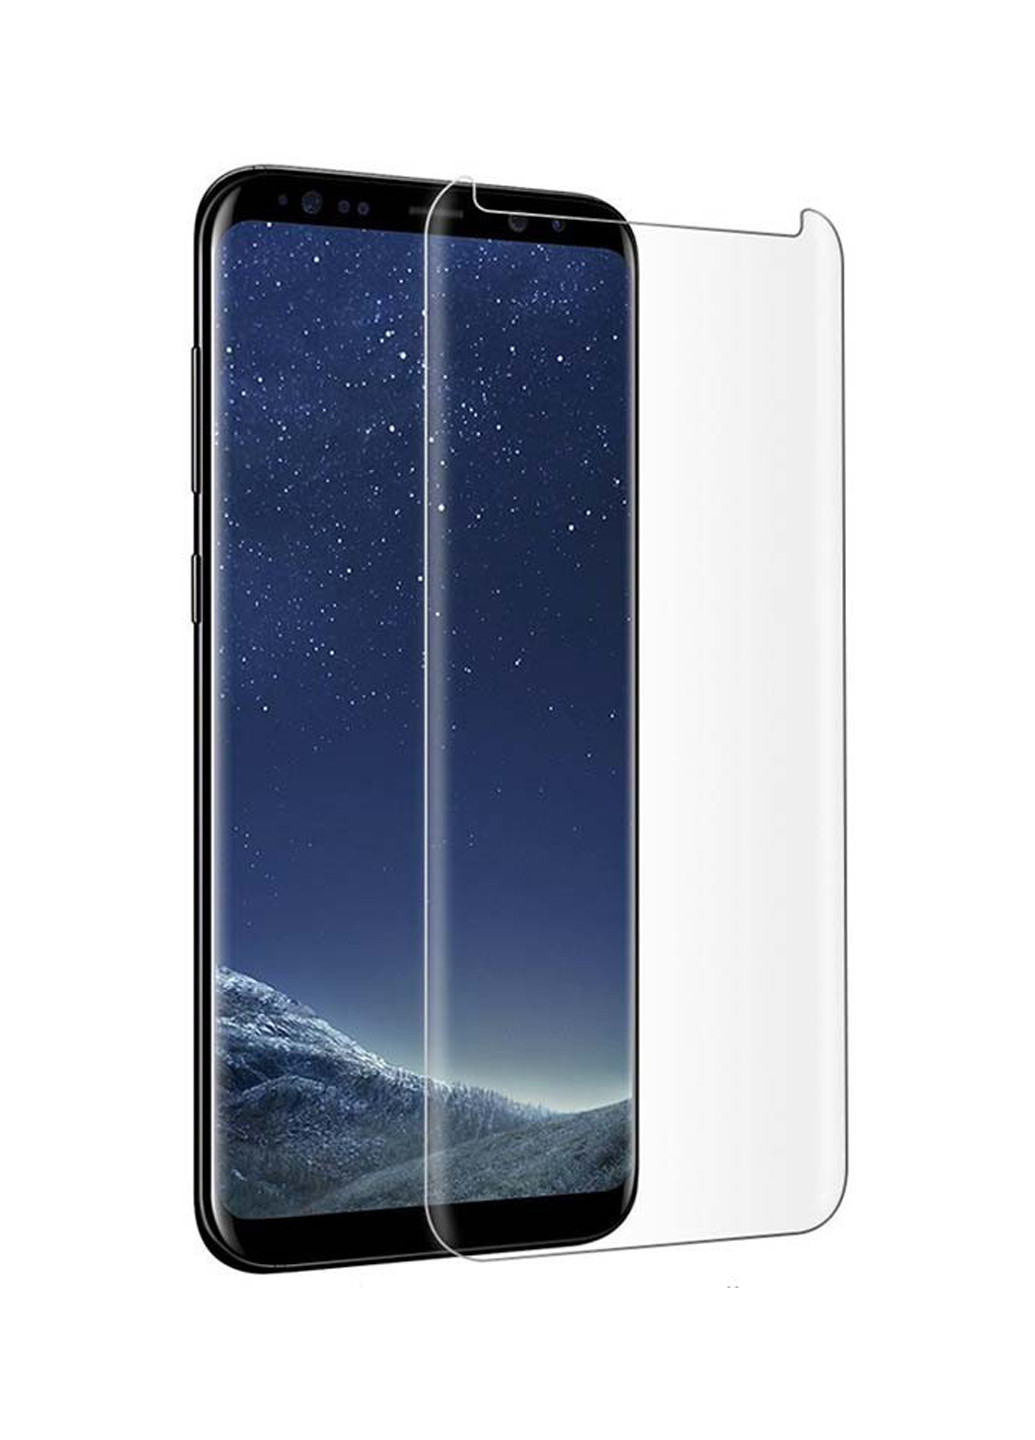 Захисне скло для Samsung Galaxy S9 (рідкий клей + УФ лампа) PowerPlant для samsung galaxy s9 (жидкий клей + уф лампа) (143721101)